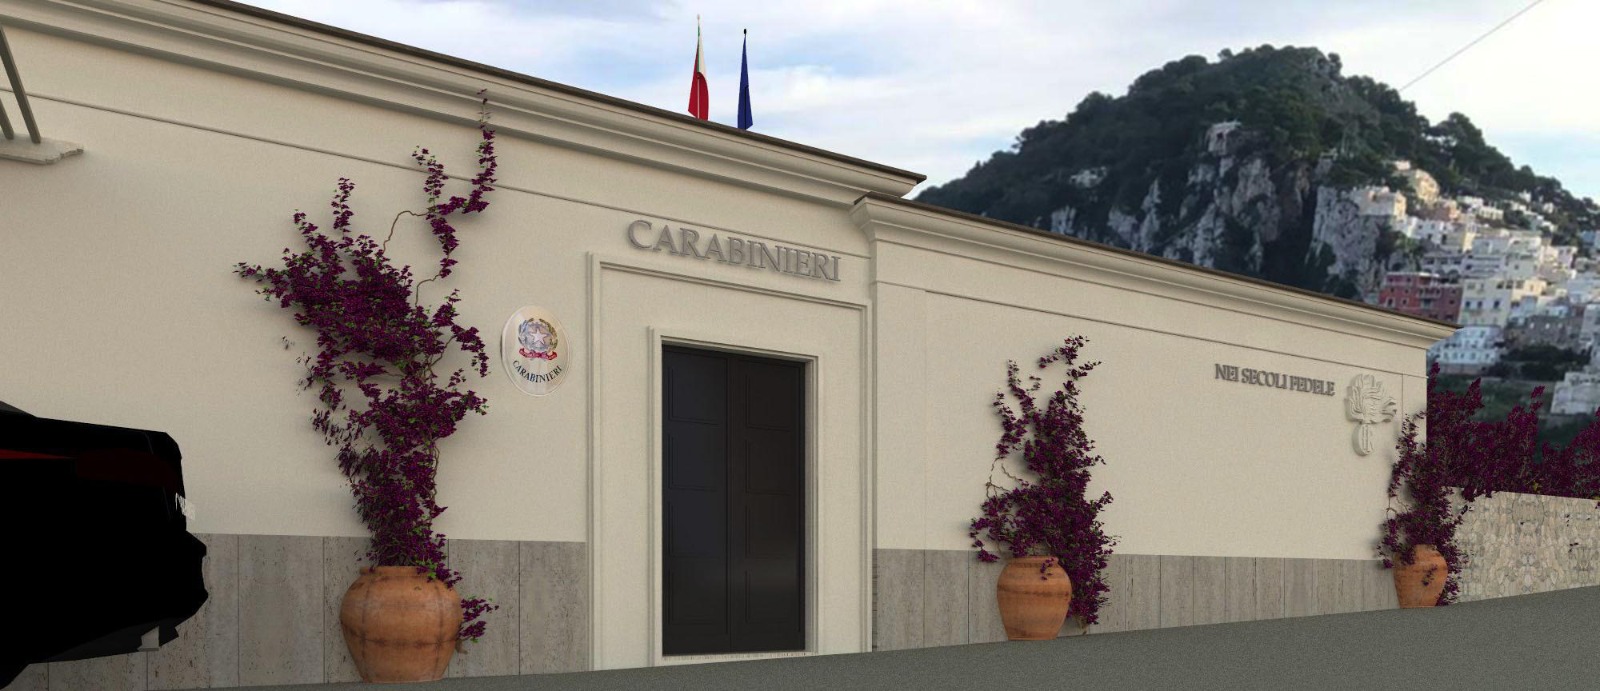 Partiranno il 2 ottobre i lavori di riqualificazione della caserma dei Carabinieri di Capri